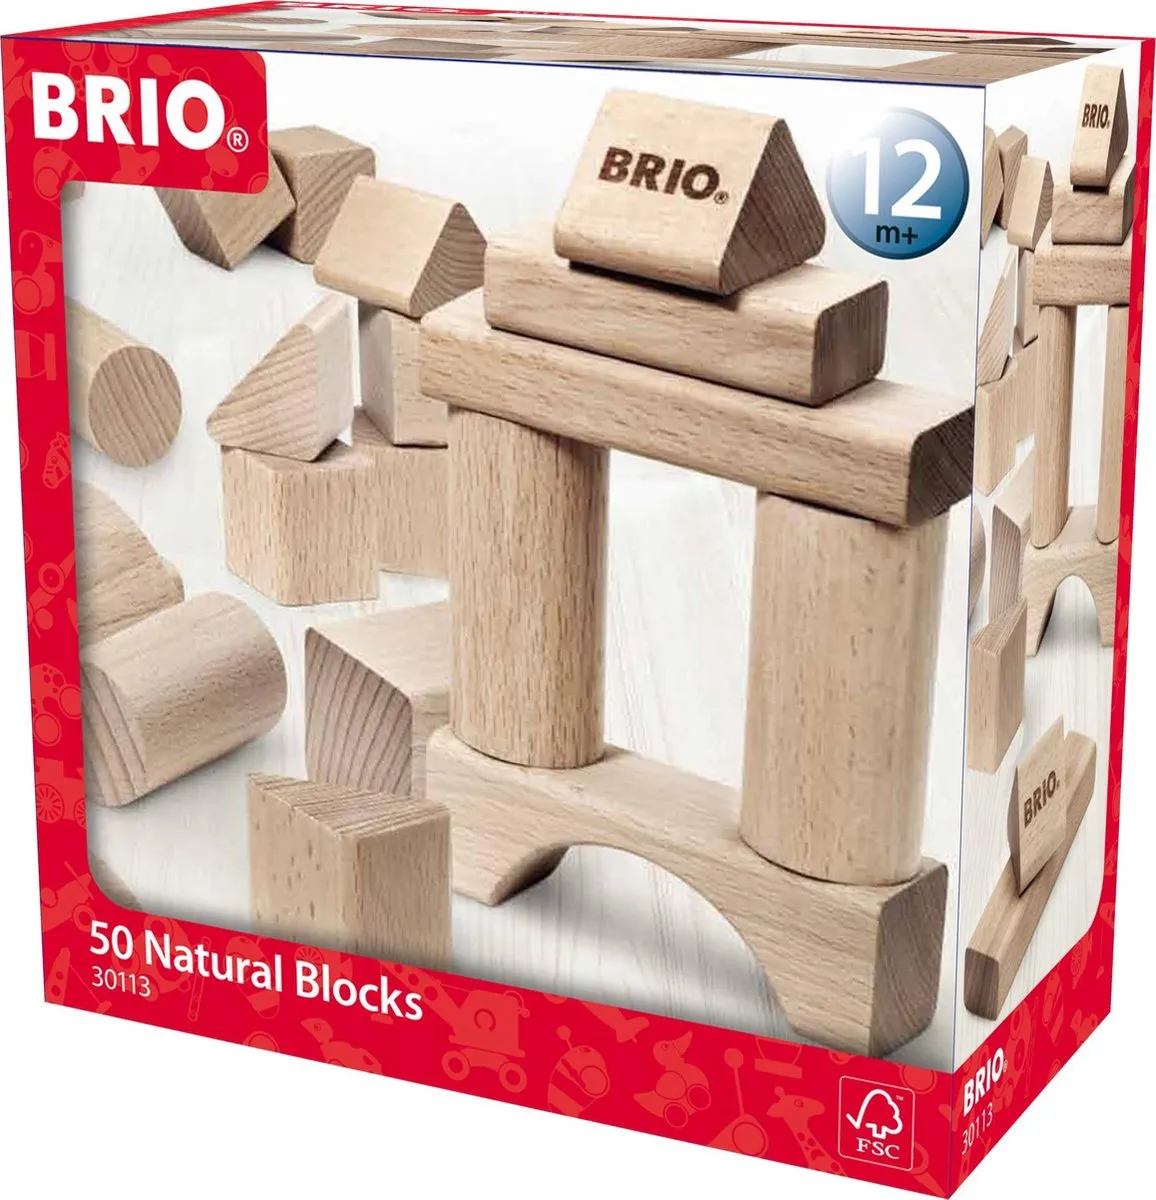 BRIO houten Blokken set naturel 50 stuks - 30113 speelgoed